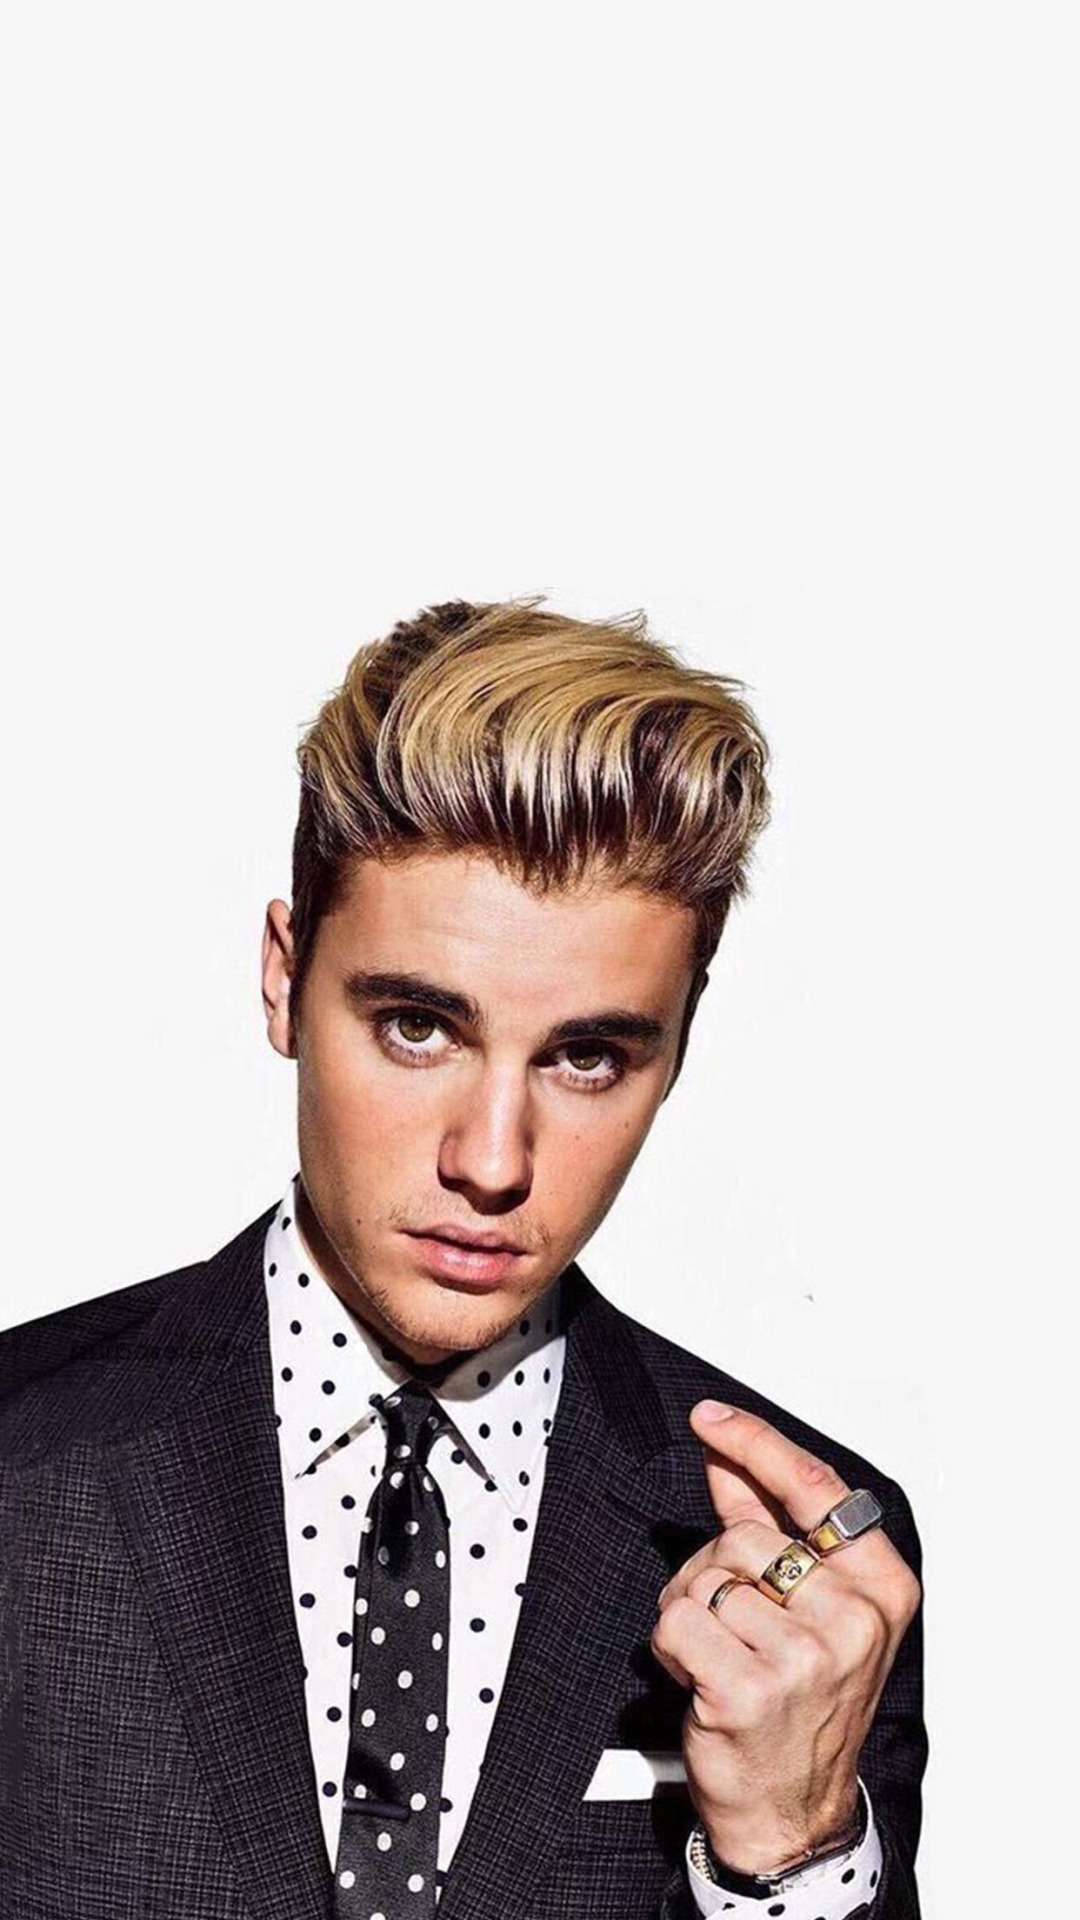 Pop star Justin Bieber arrives in a black suit. Wallpaper